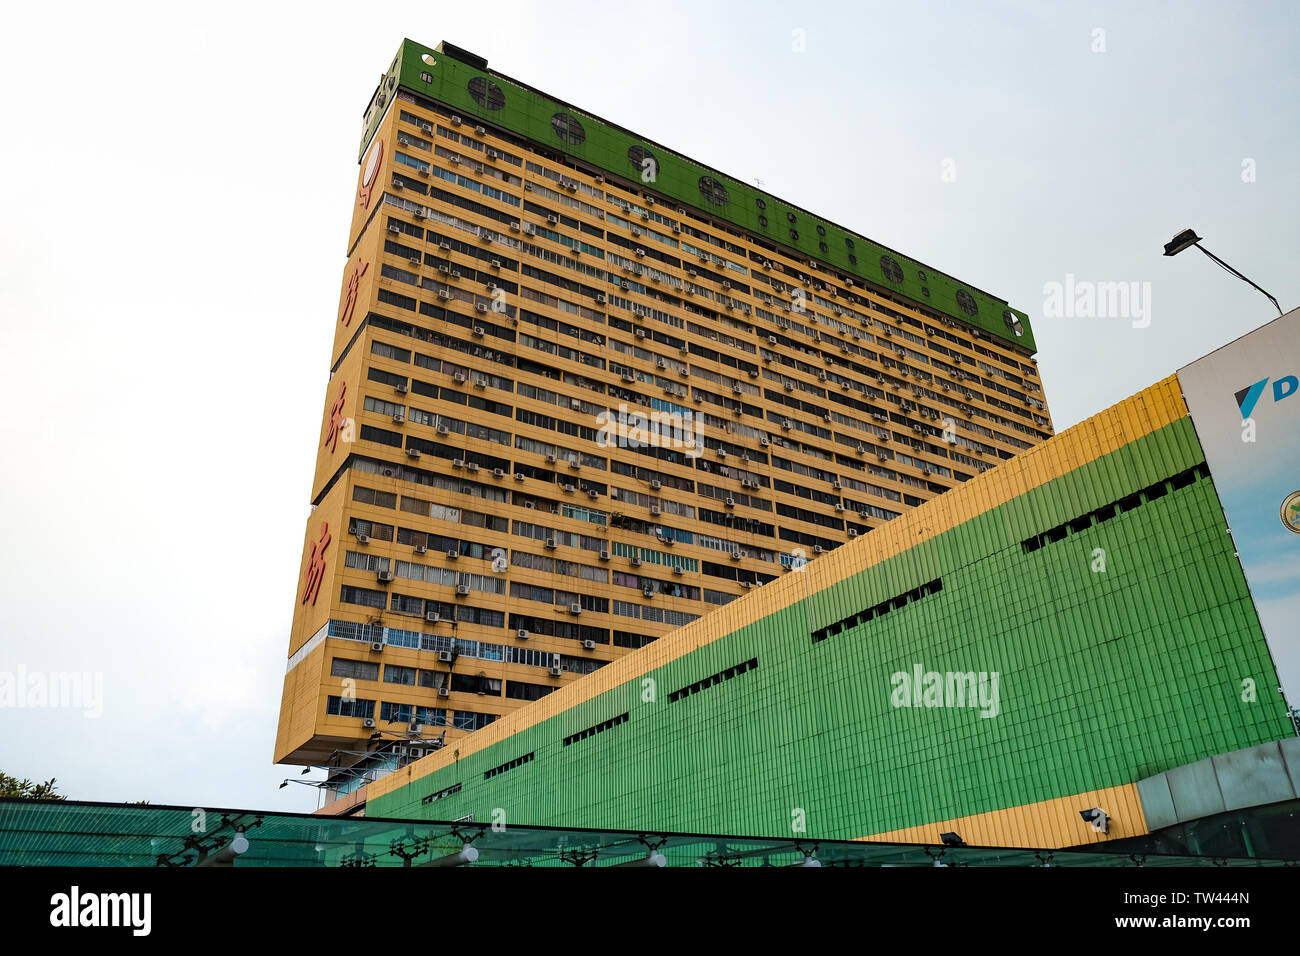 Les peuples d'un parc de 31 étages des années 1970, la construction des logements, de la nourriture et un centre commercial situé dans le quartier chinois de Singapour. Banque D'Images